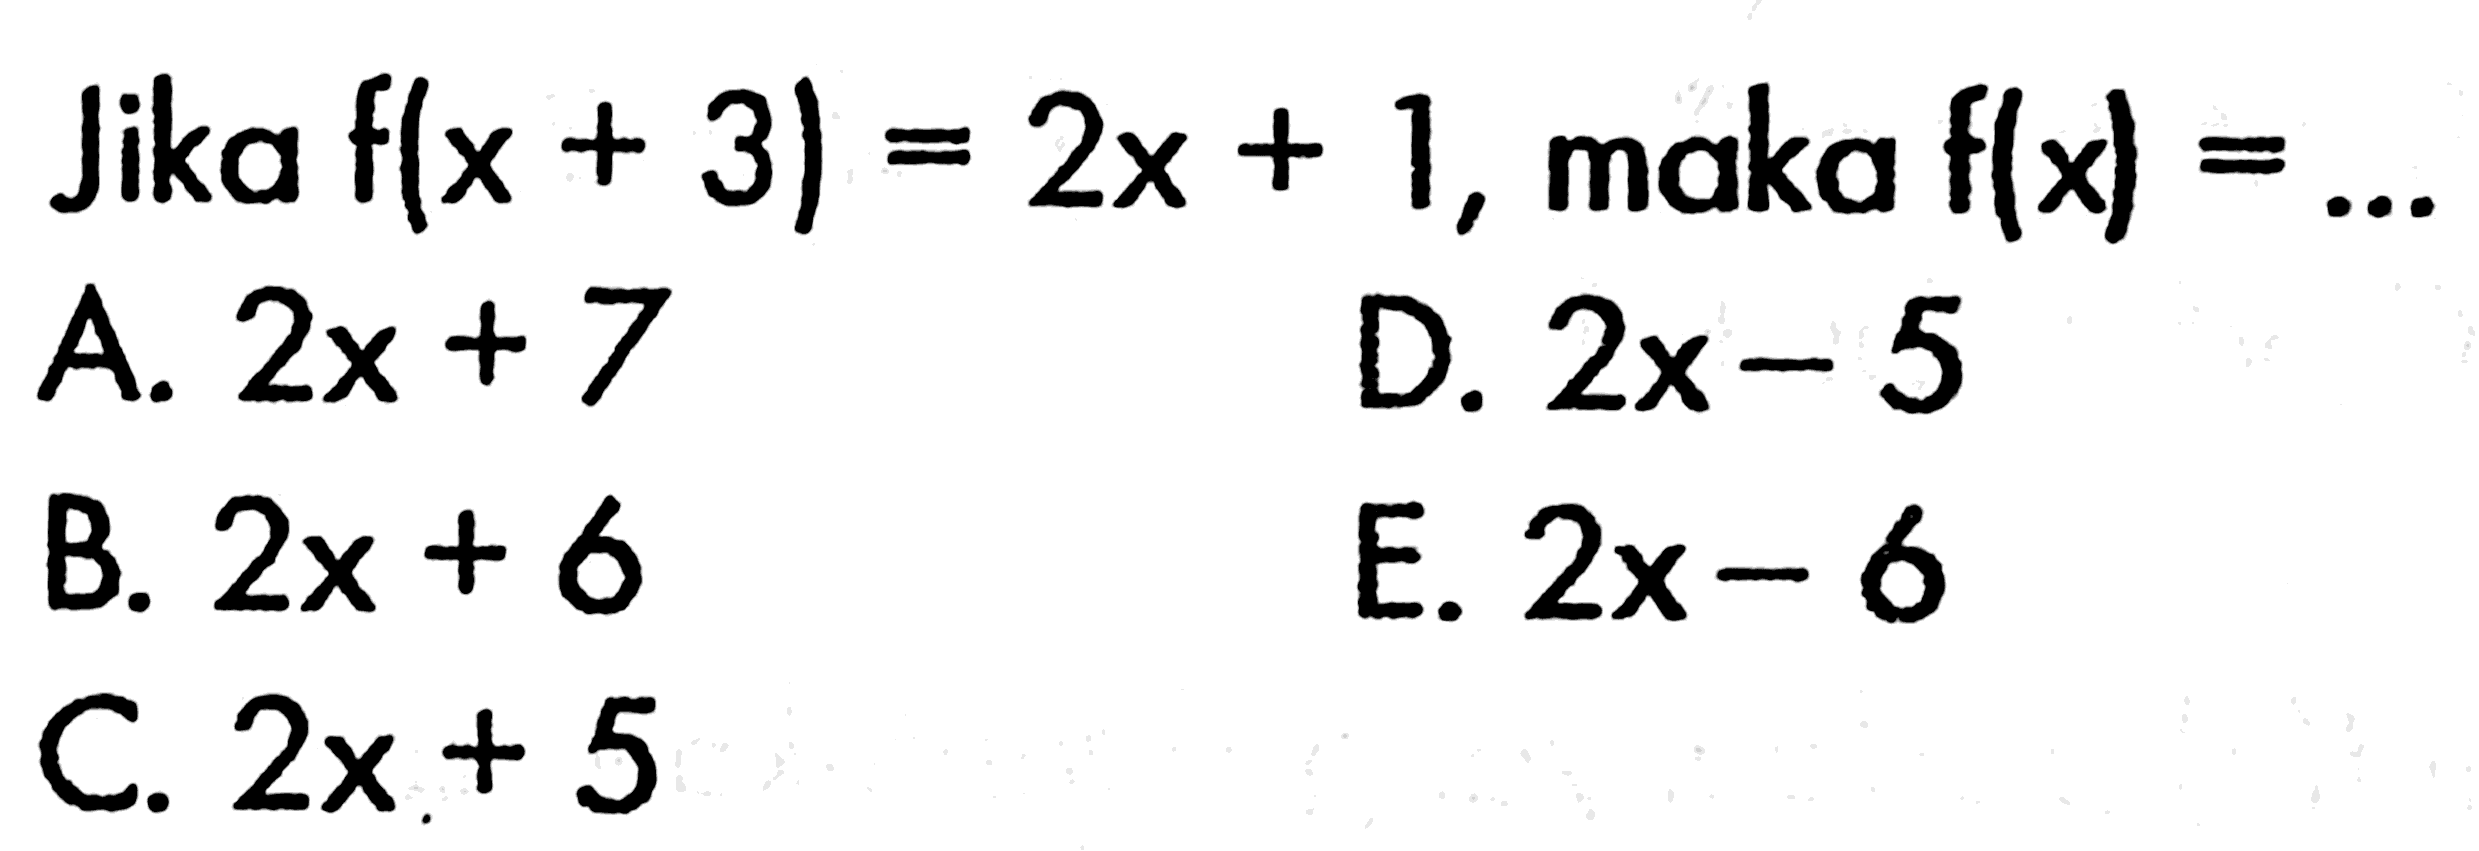 Jika f(x+3)=2x+1, maka f(x)=...
